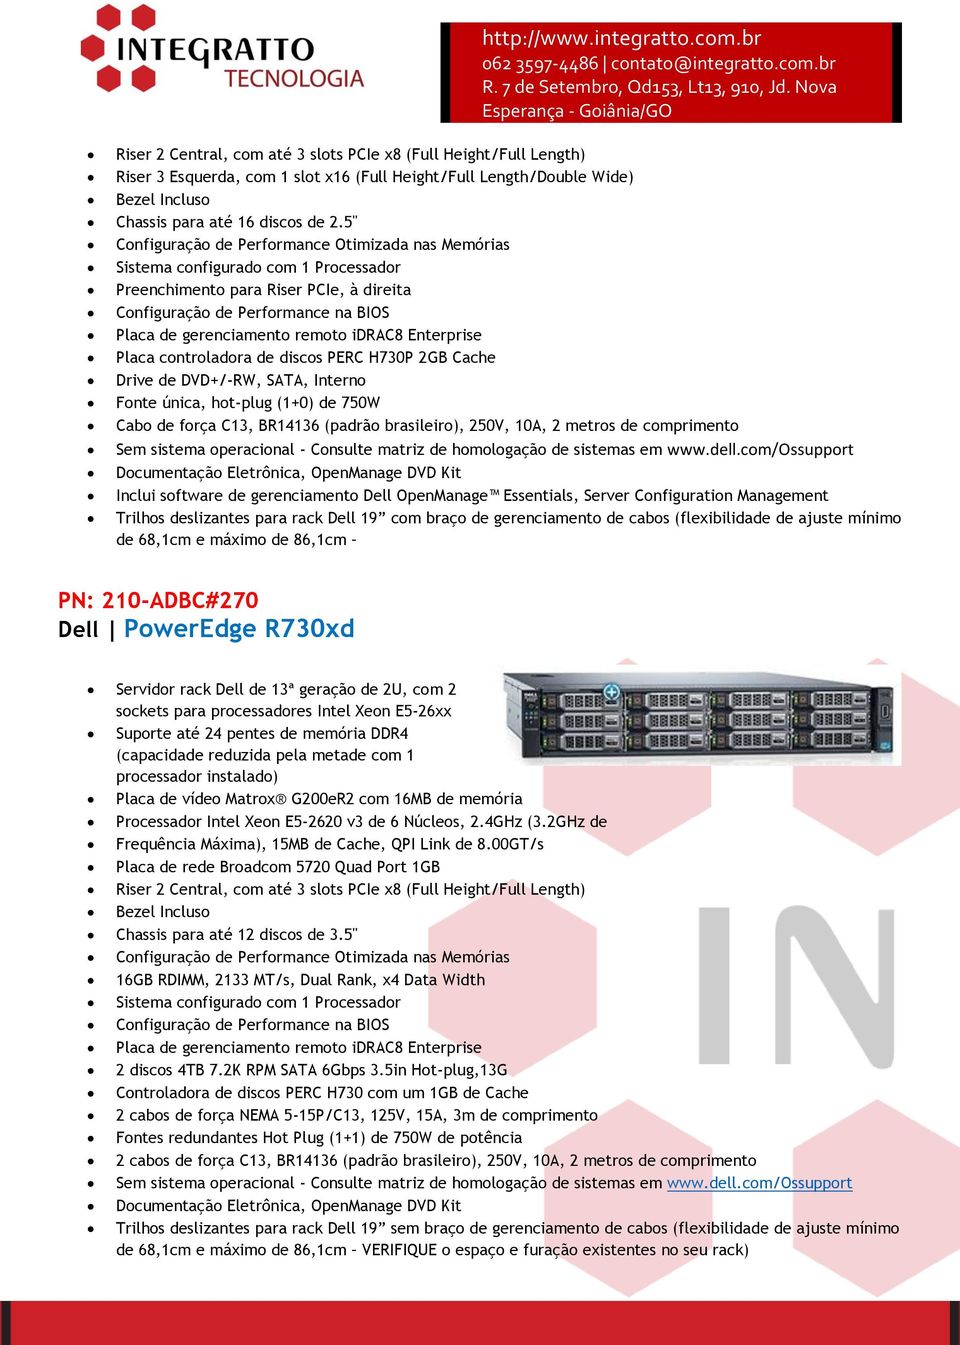 idrac8 Enterprise Placa controladora de discos PERC H730P 2GB Cache Drive de DVD+/-RW, SATA, Interno Fonte única, hot-plug (1+0) de 750W Cabo de força C13, BR14136 (padrão brasileiro), 250V, 10A, 2